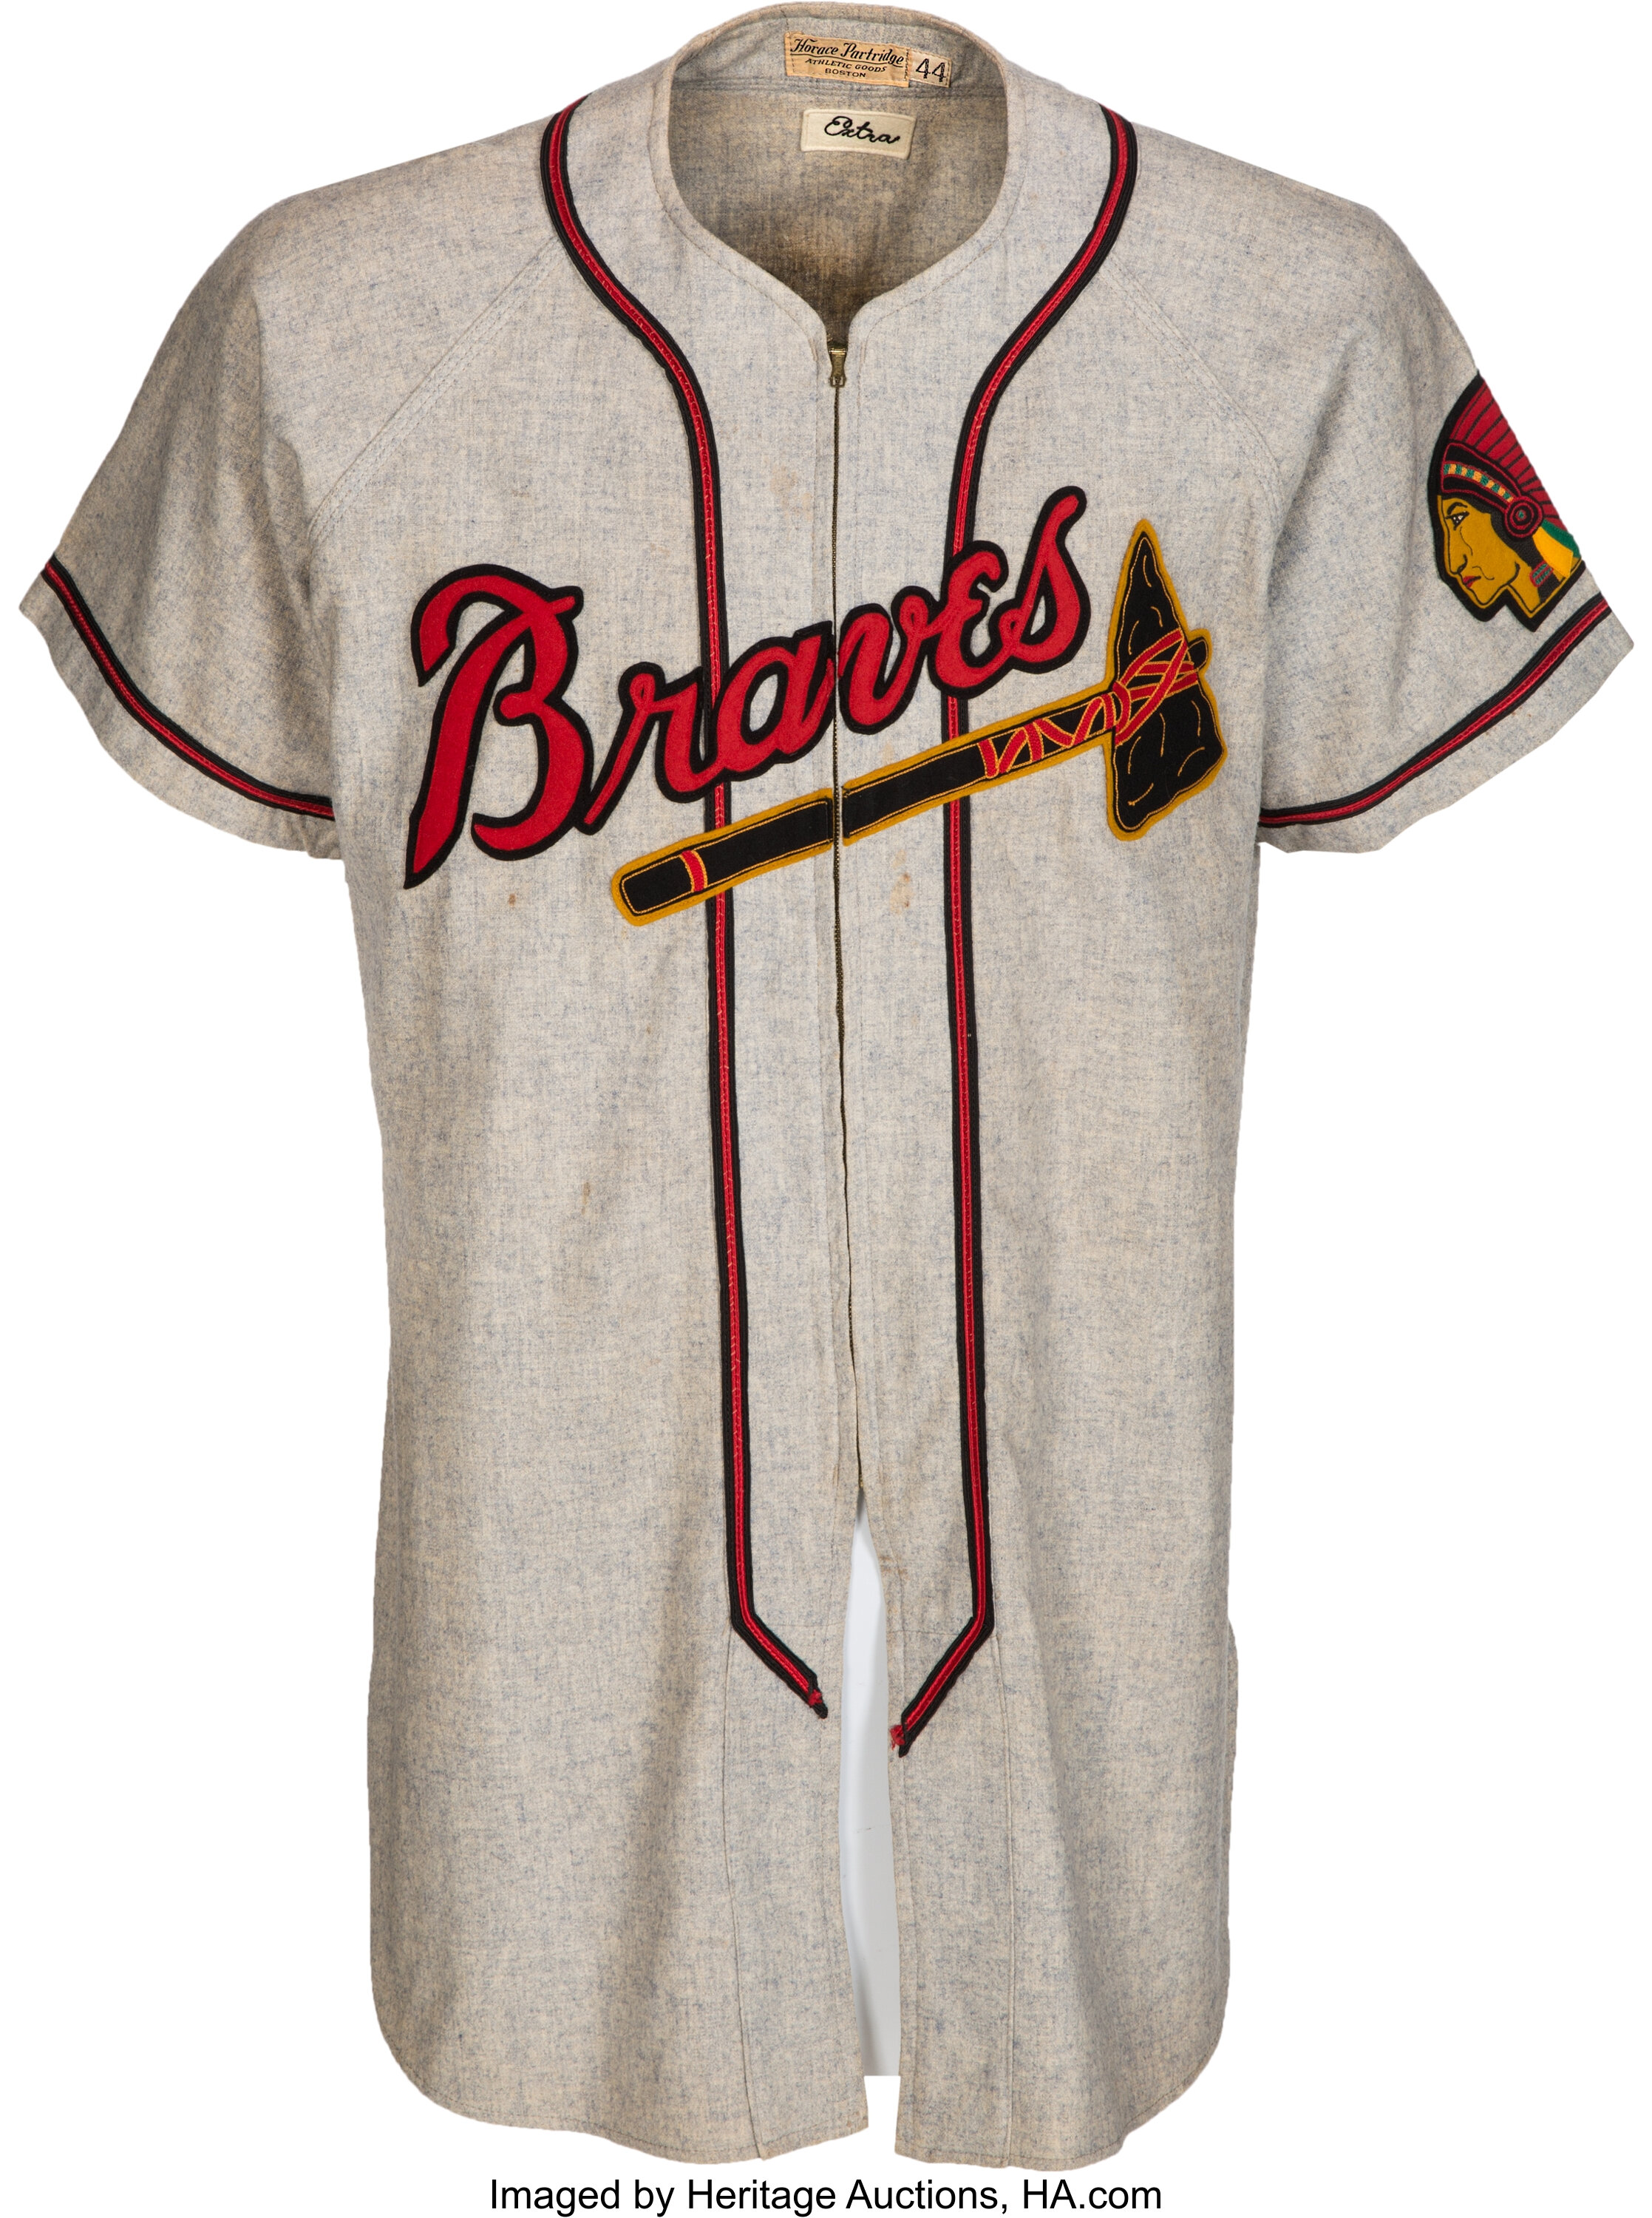 1952 Dick Donovan Game Worn Boston Braves Jersey & Pants., Lot #56435